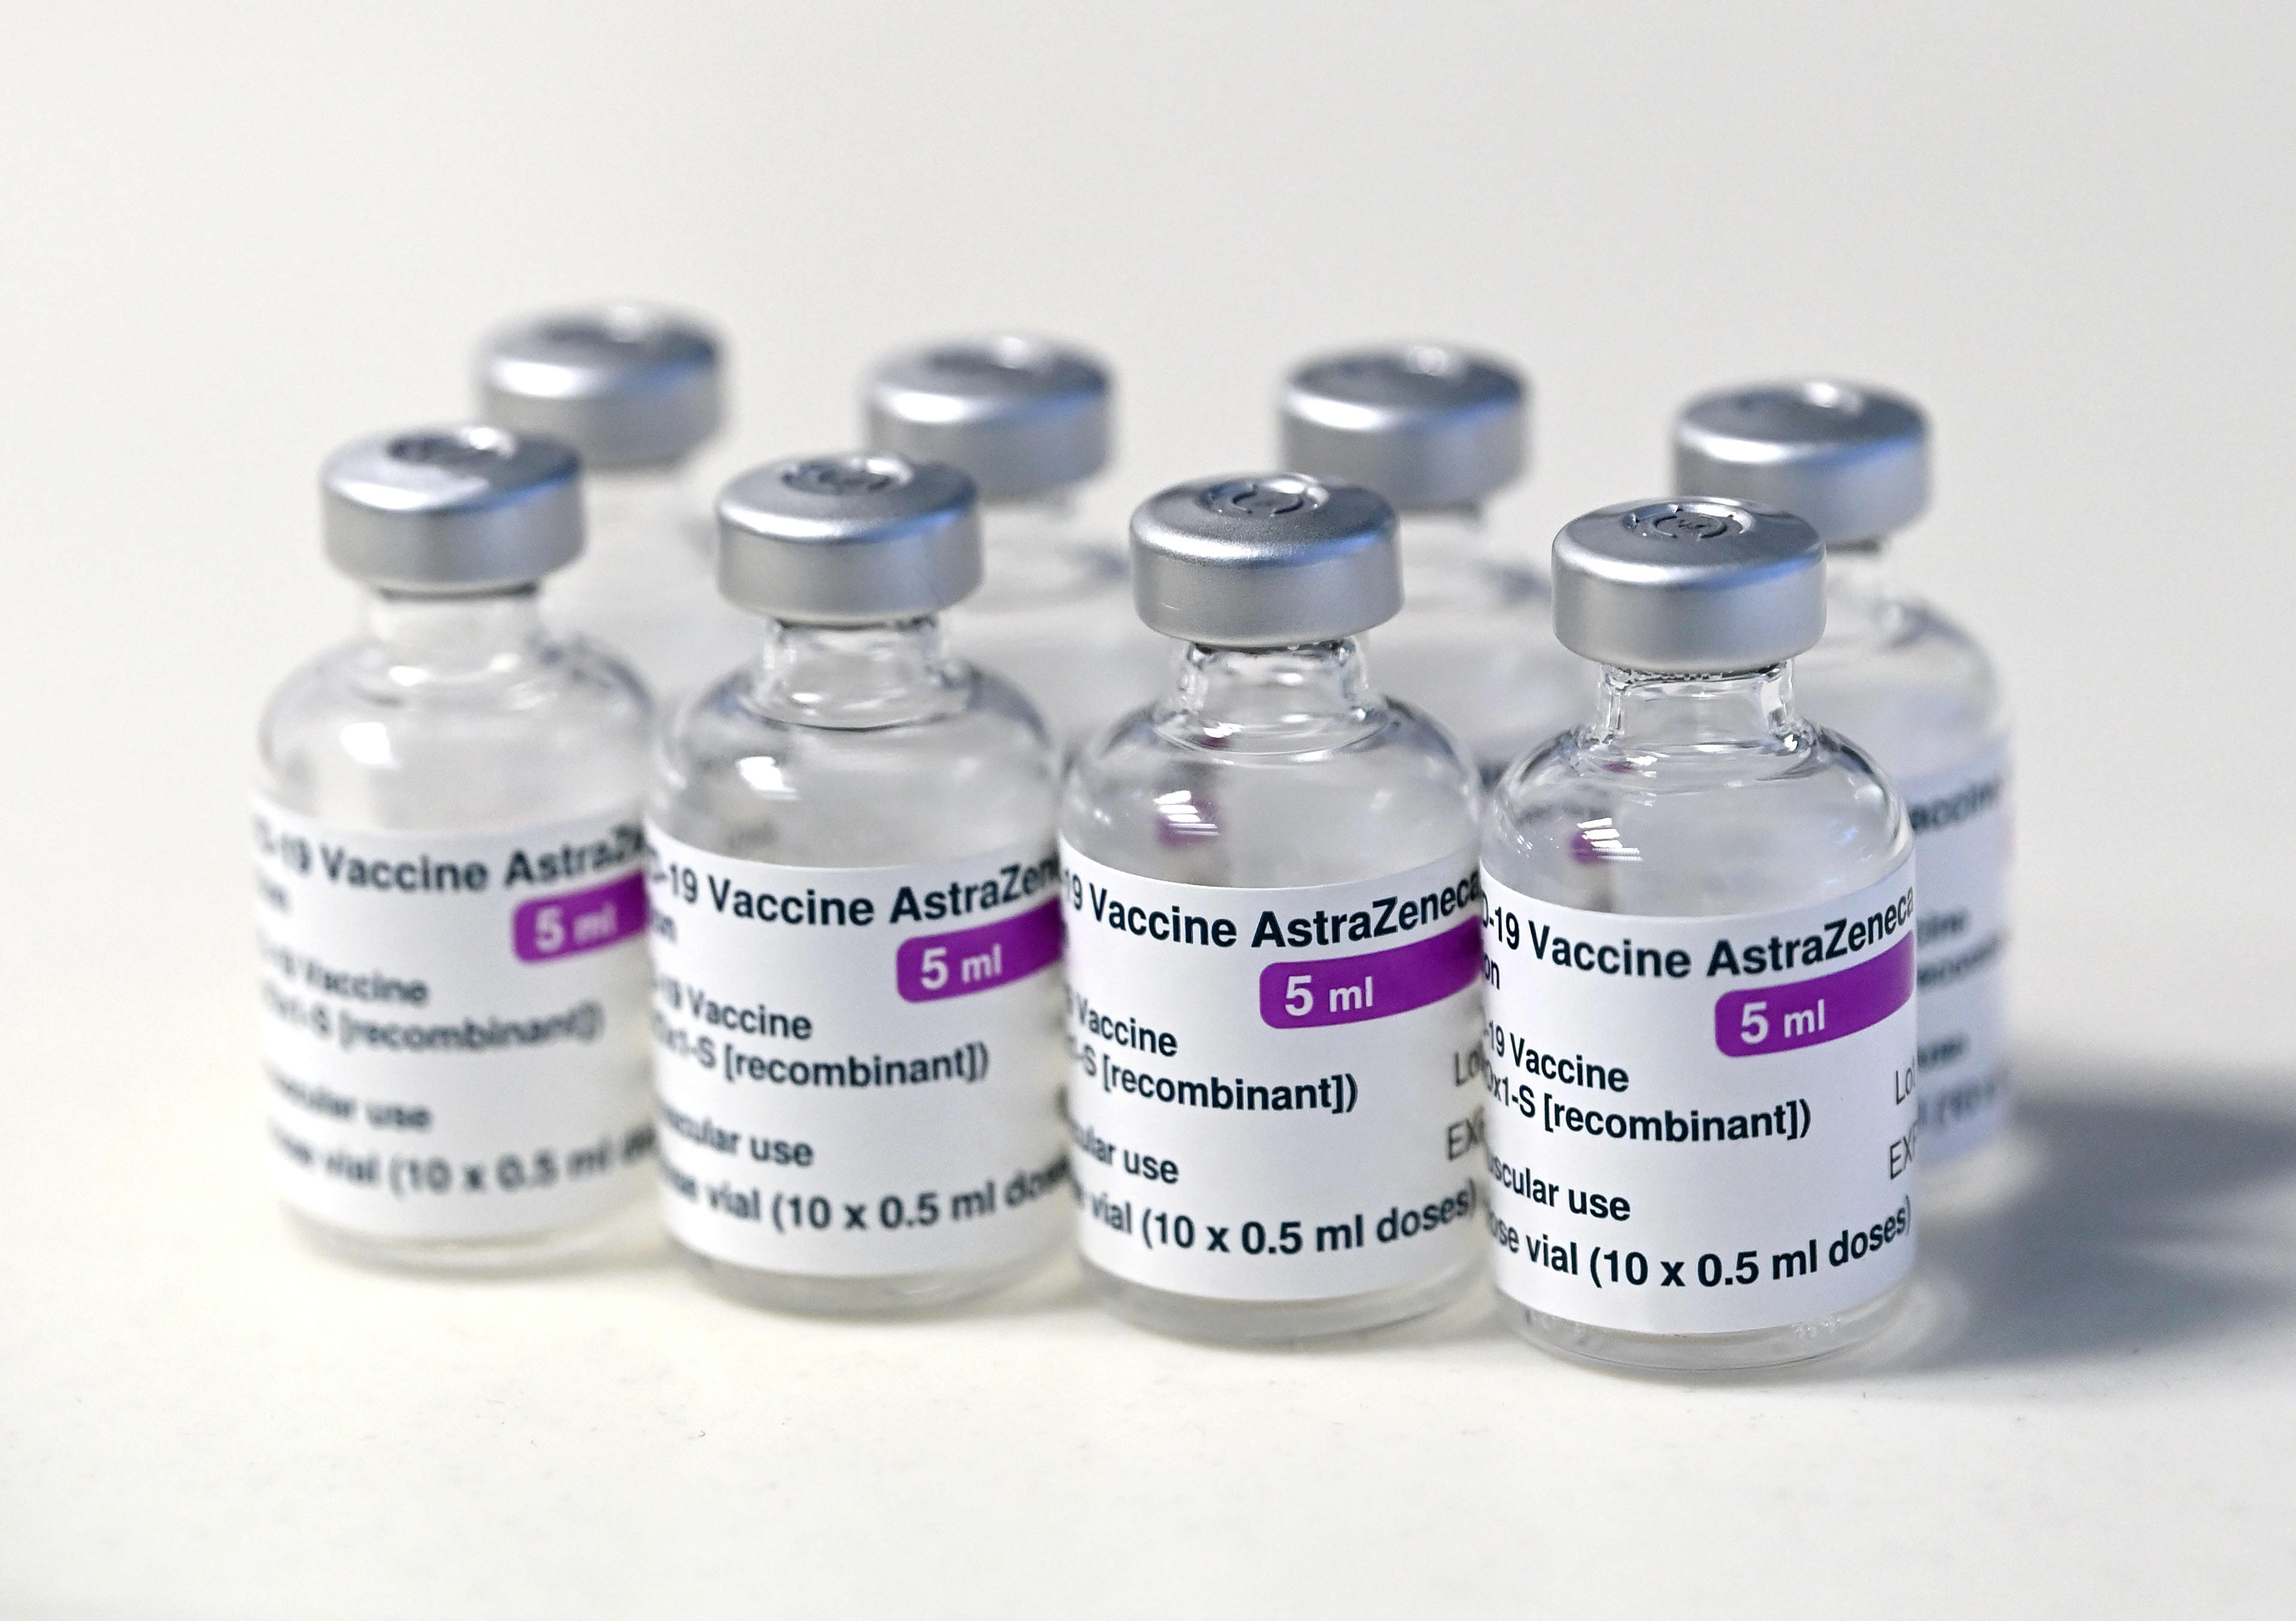 Denmark suspends use of AstraZeneca Covid vaccine